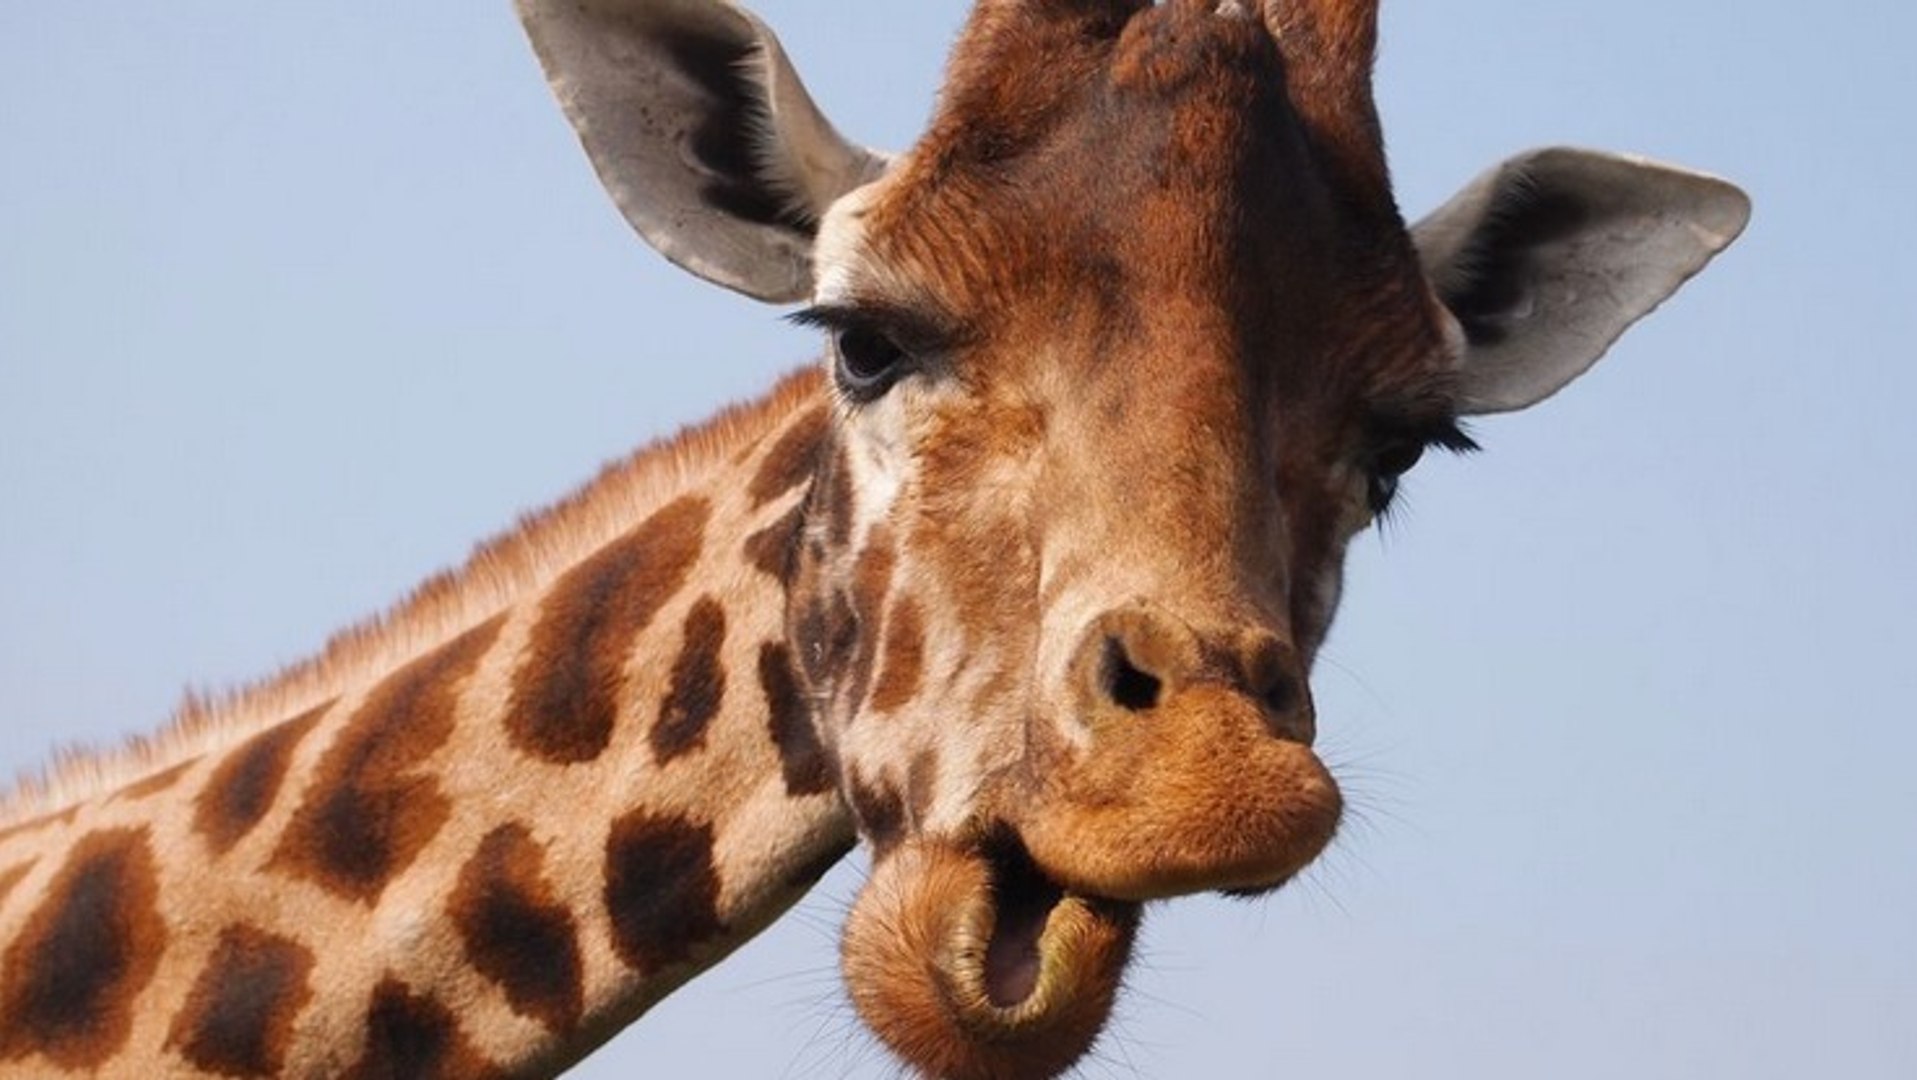 Animaux : à quoi ressemble le cri de la girafe ? - Vidéo Dailymotion